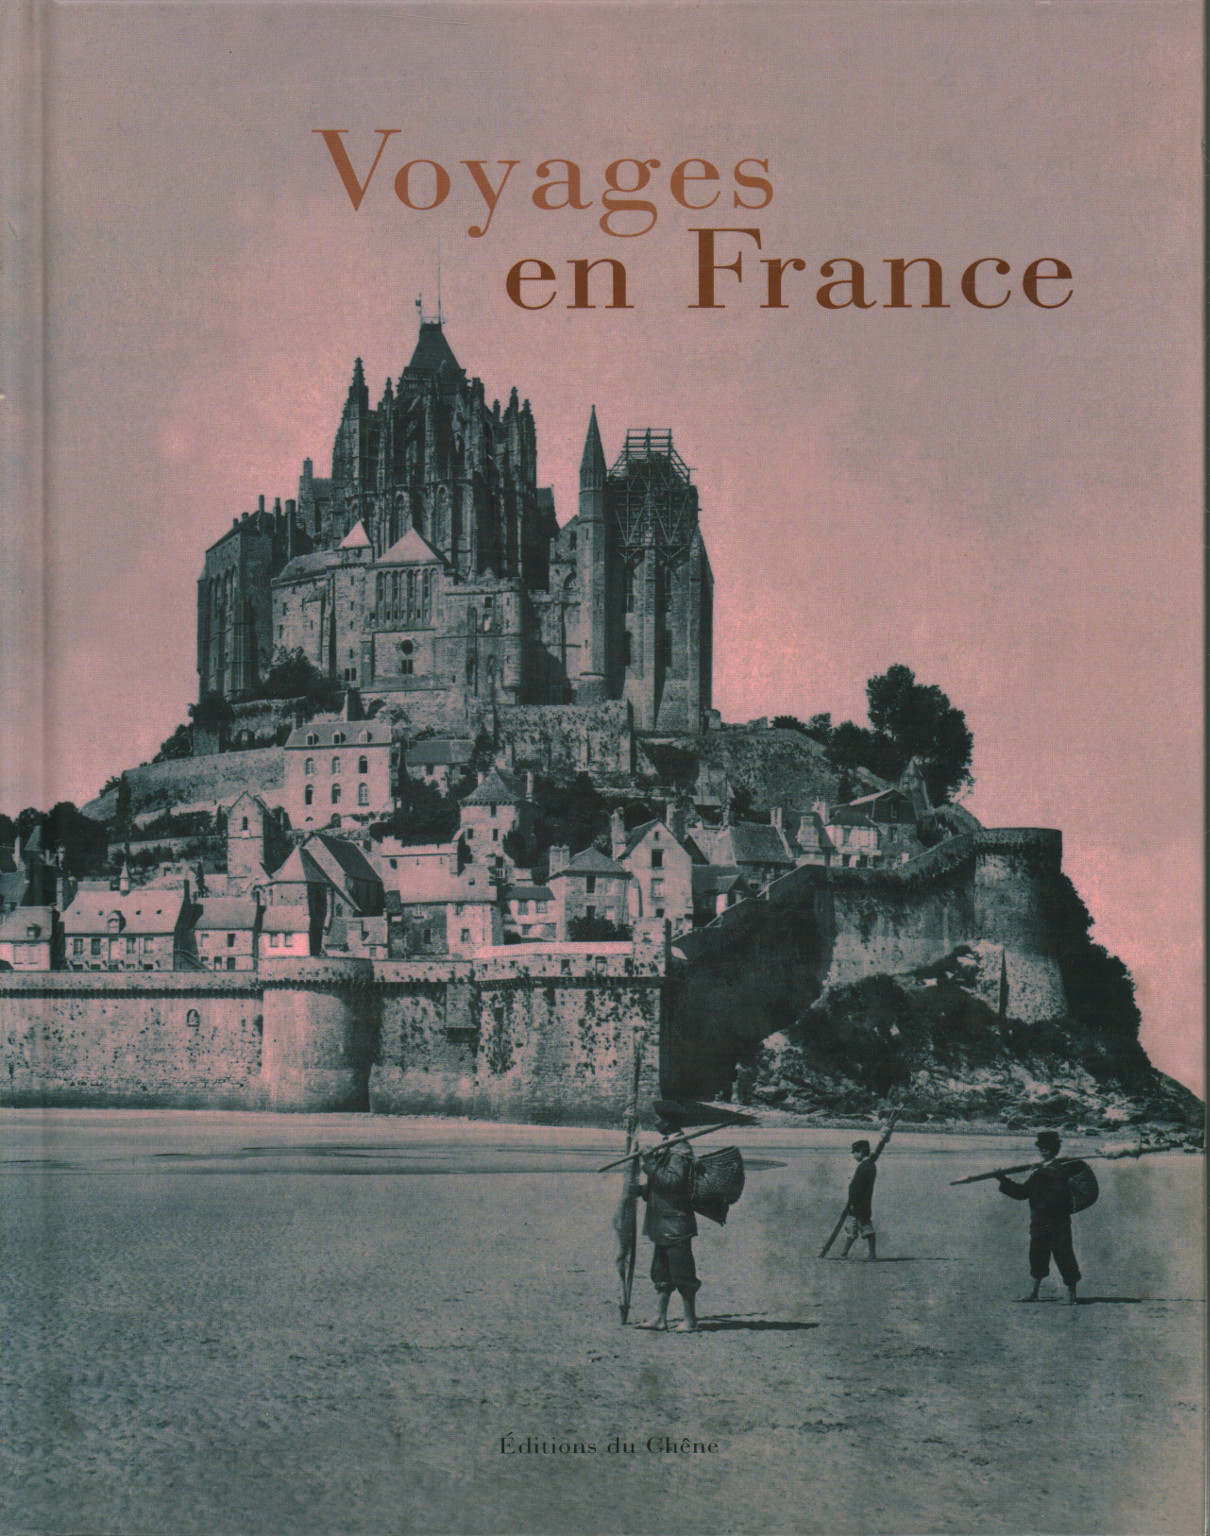 Voyages en France, s.un.